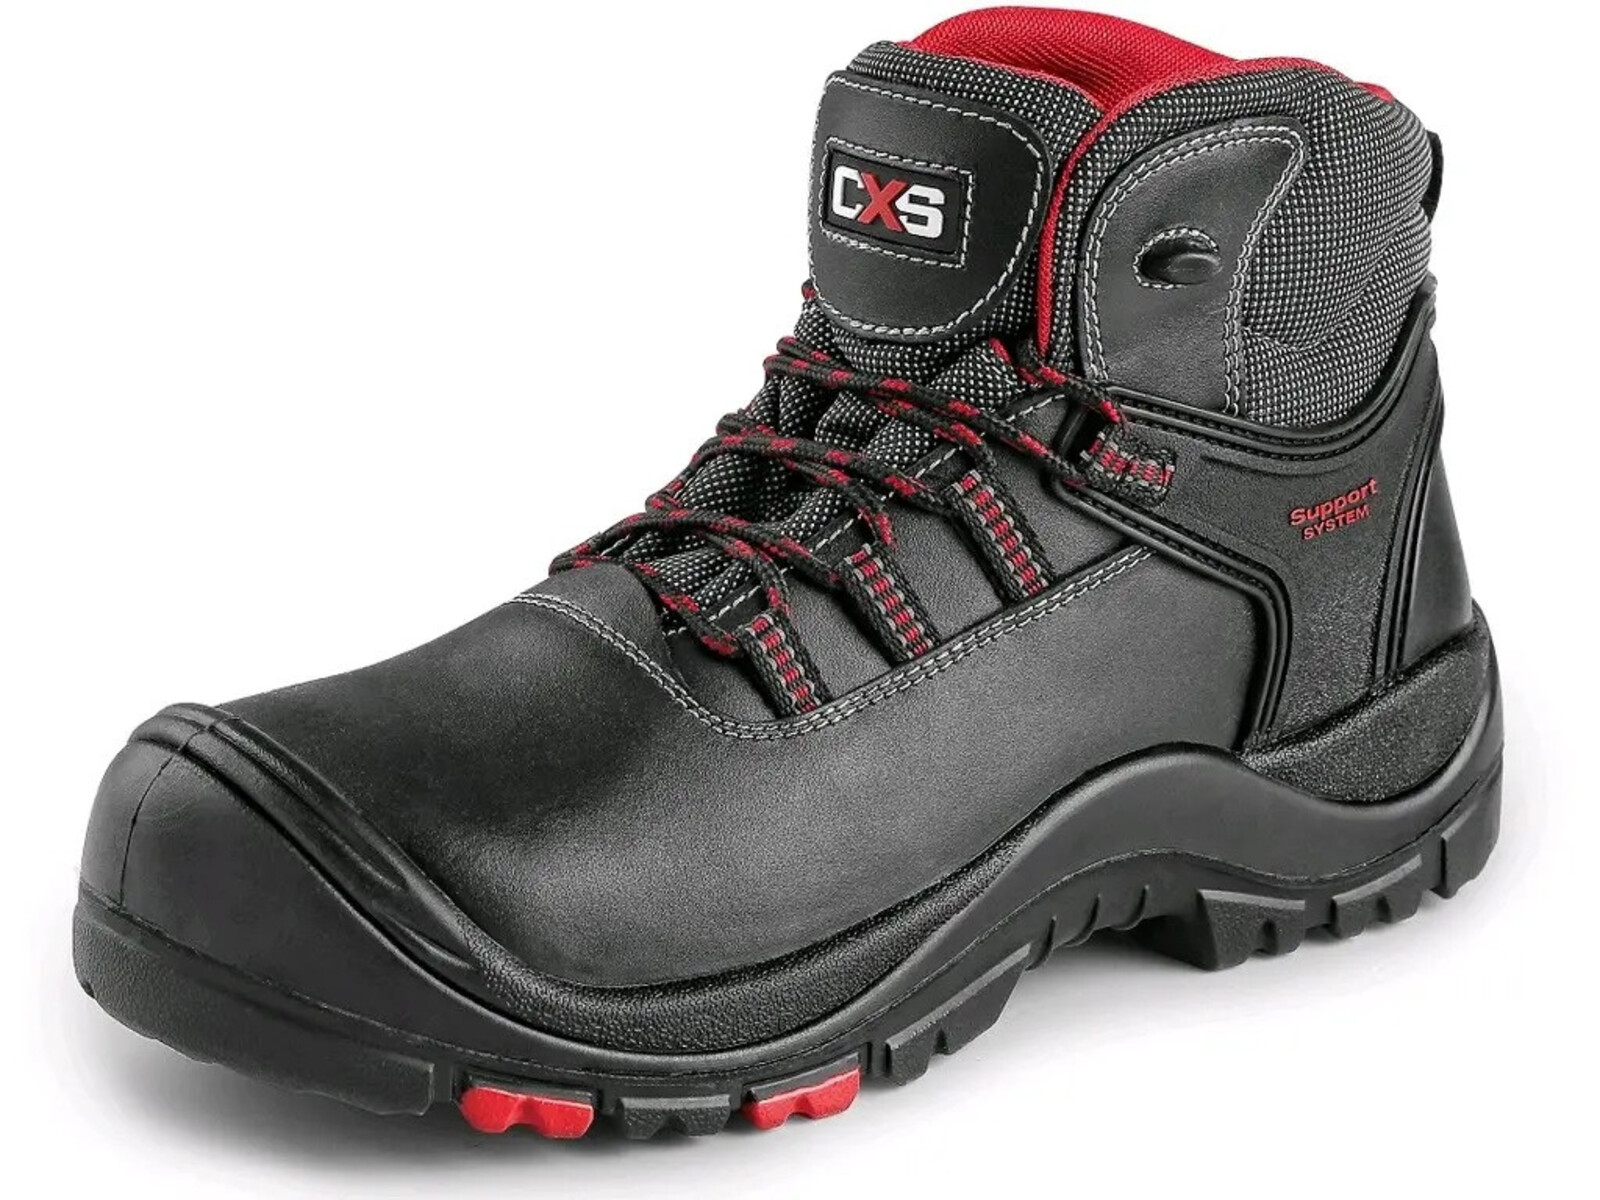 Bezpečnostná členková obuv CXS Rock Granite S3 SRC HRO MF - veľkosť: 44, farba: čierna/červená